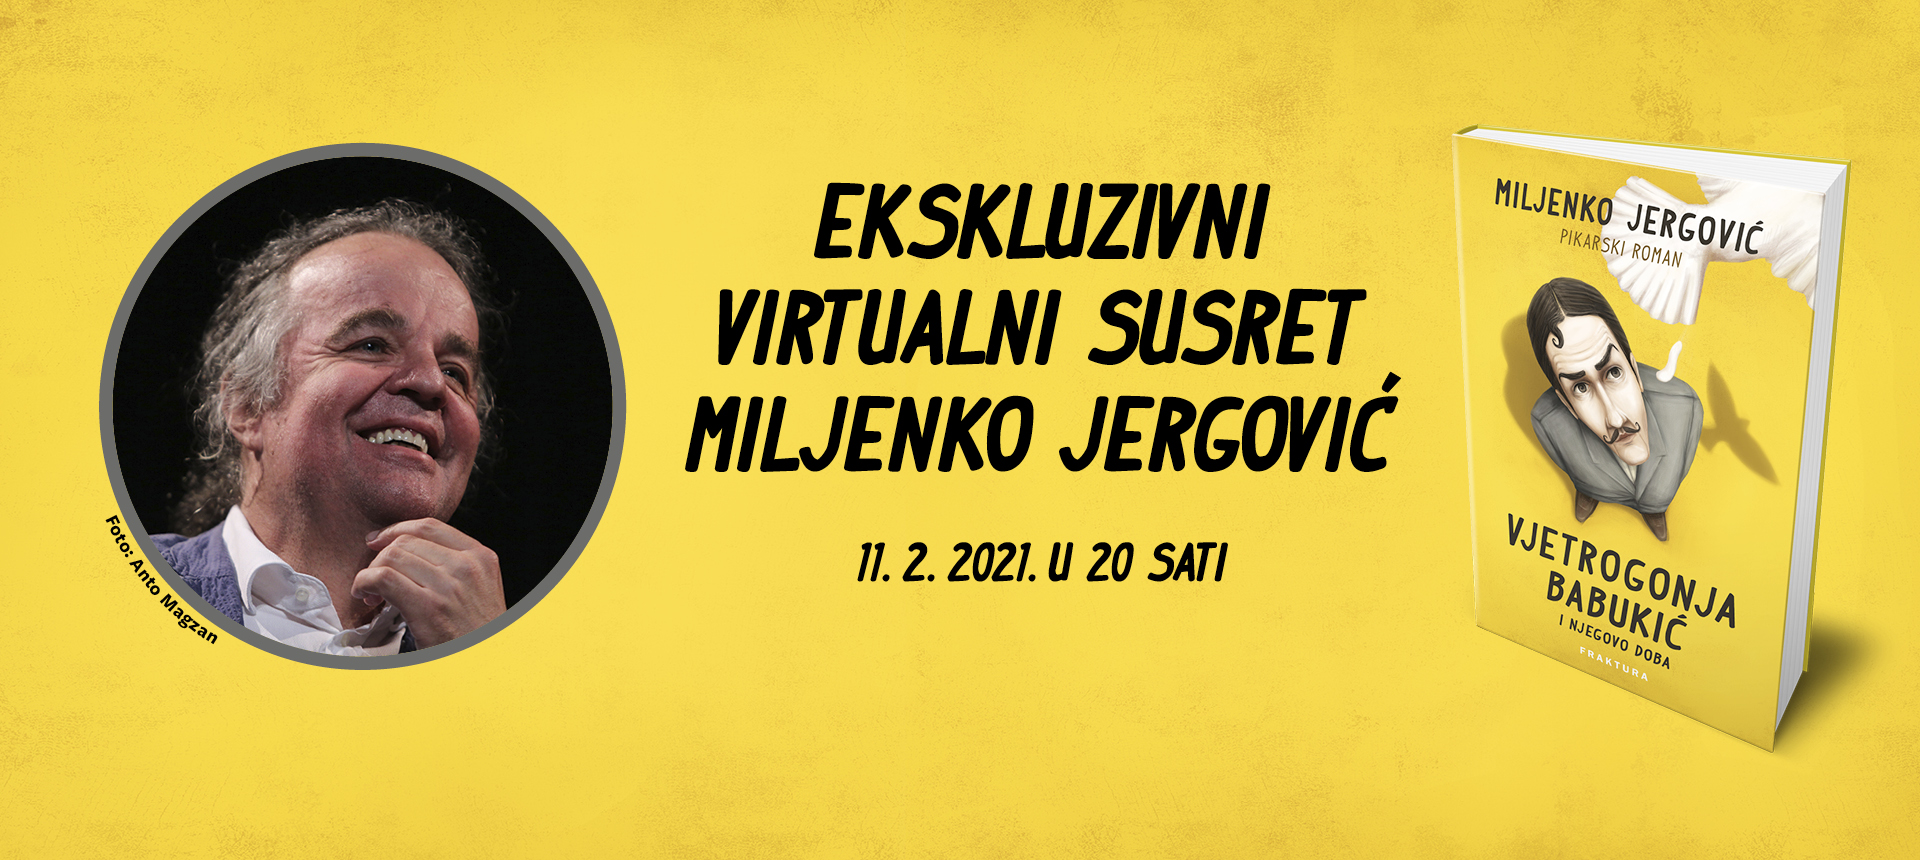 Ekskluzivni virtualni susret: Miljenko Jergović